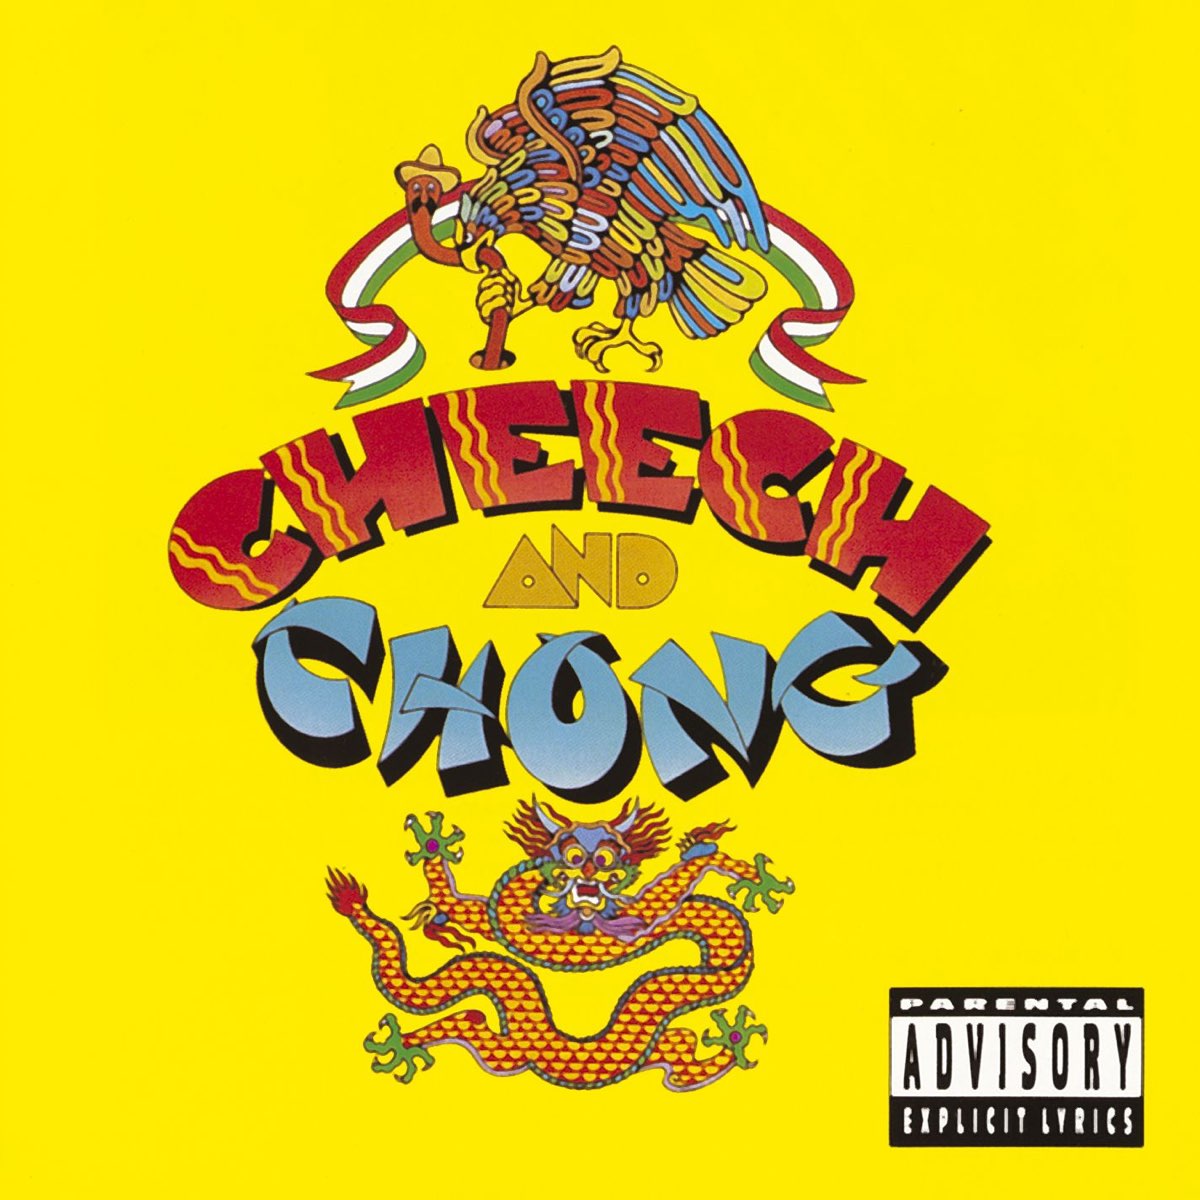 Cheech and Chong - Album by Cheech & Chong - Apple Music